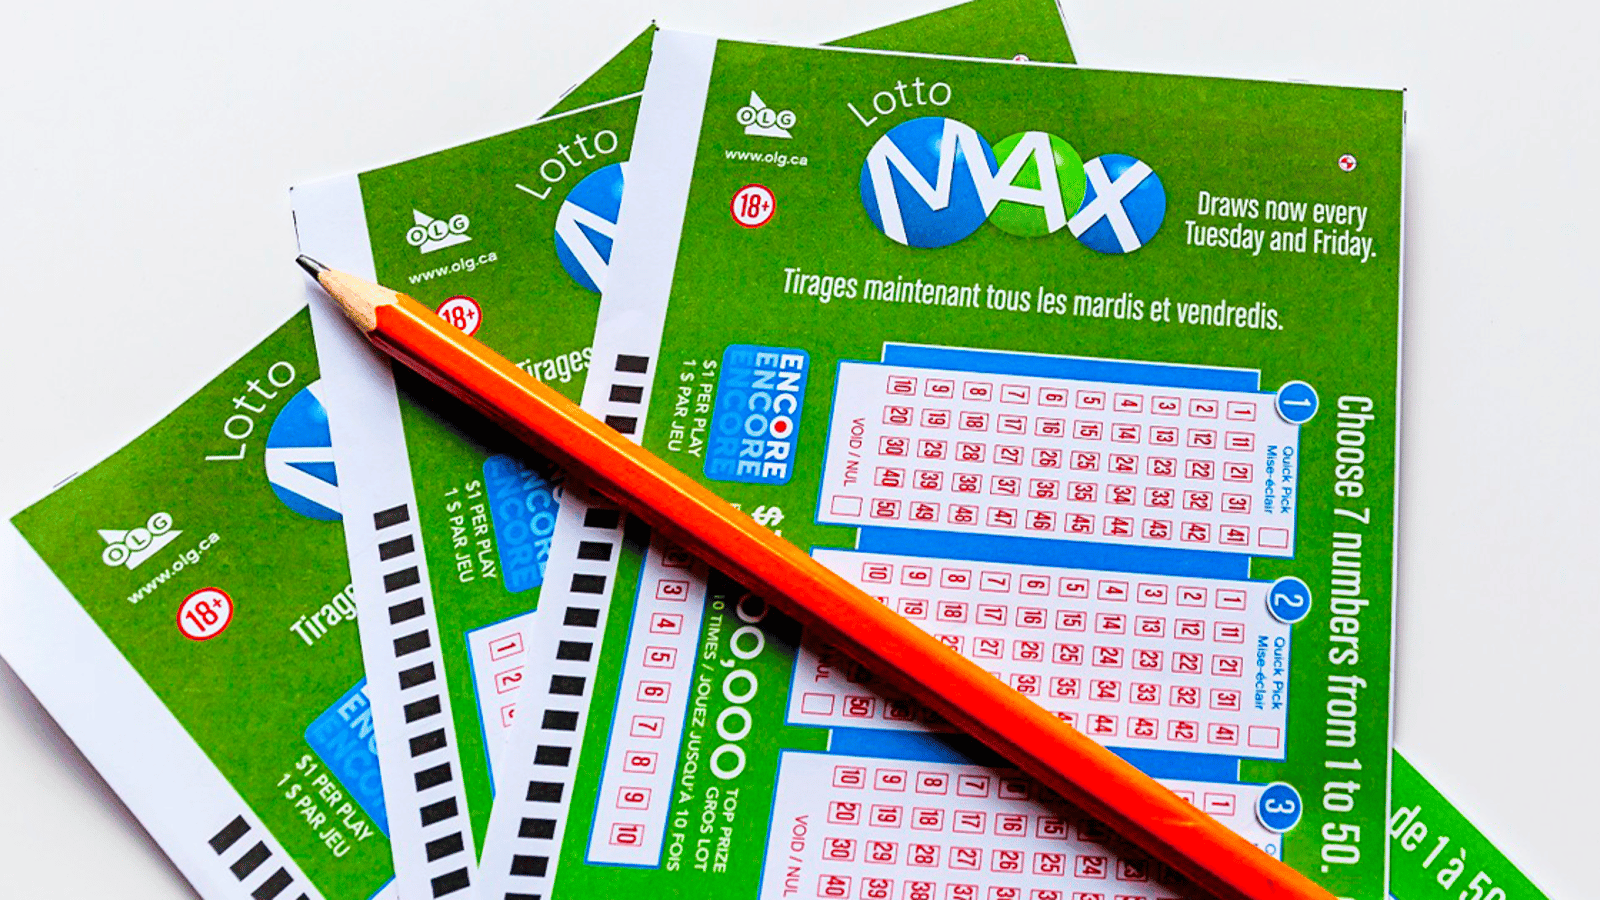 La cagnotte du prochain tirage du Lotto Max atteint un montant gigantesque